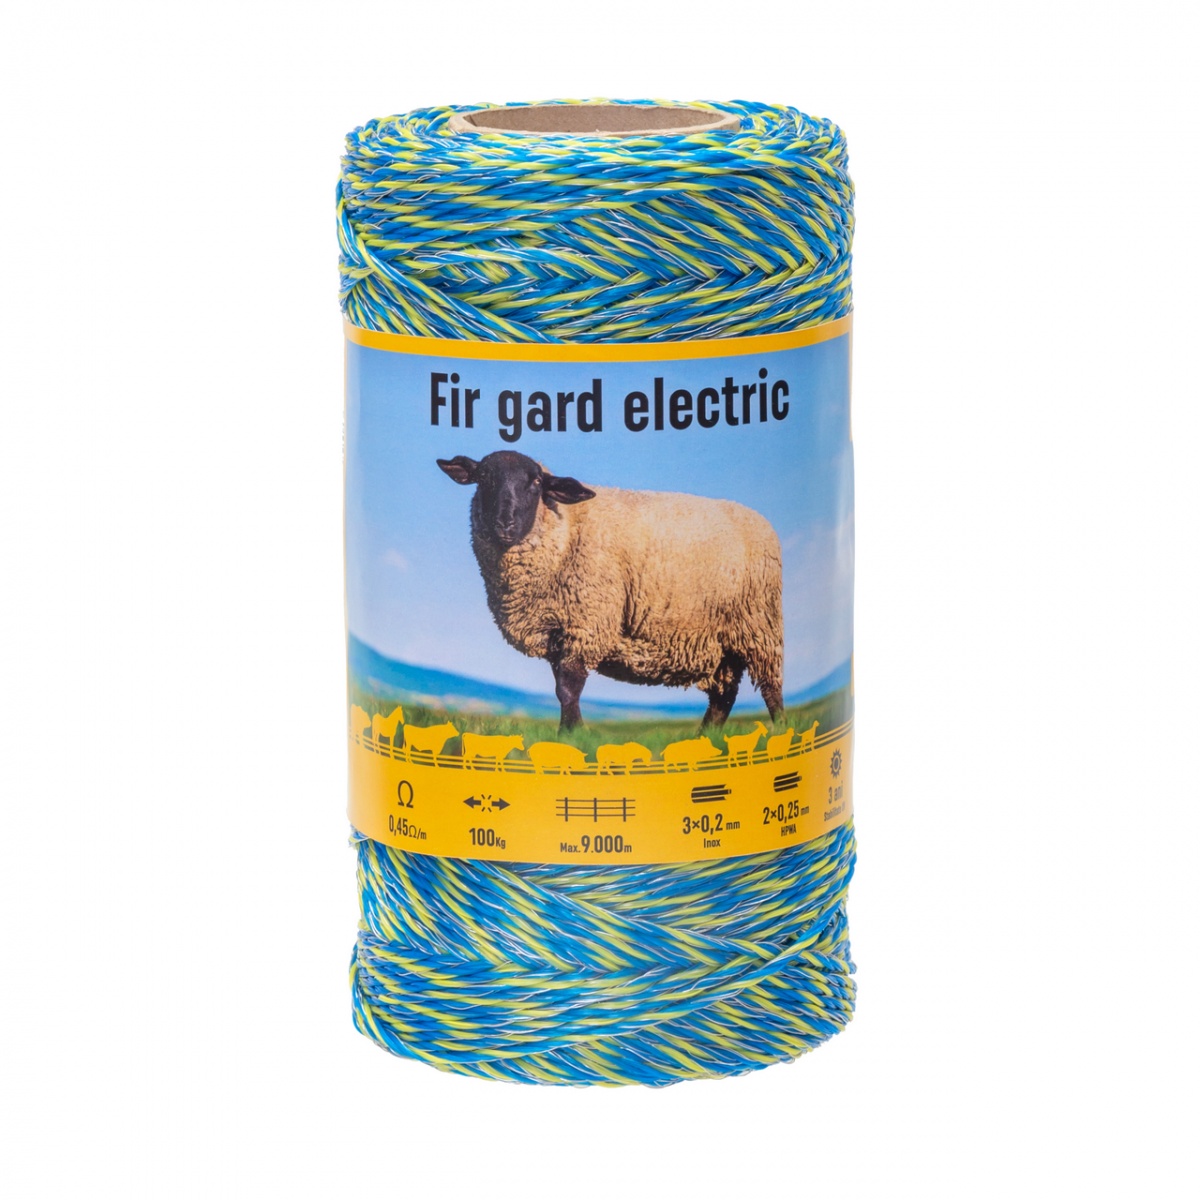 Fir gard electric - 250 m - 100 kg - 0,45 Ω/m